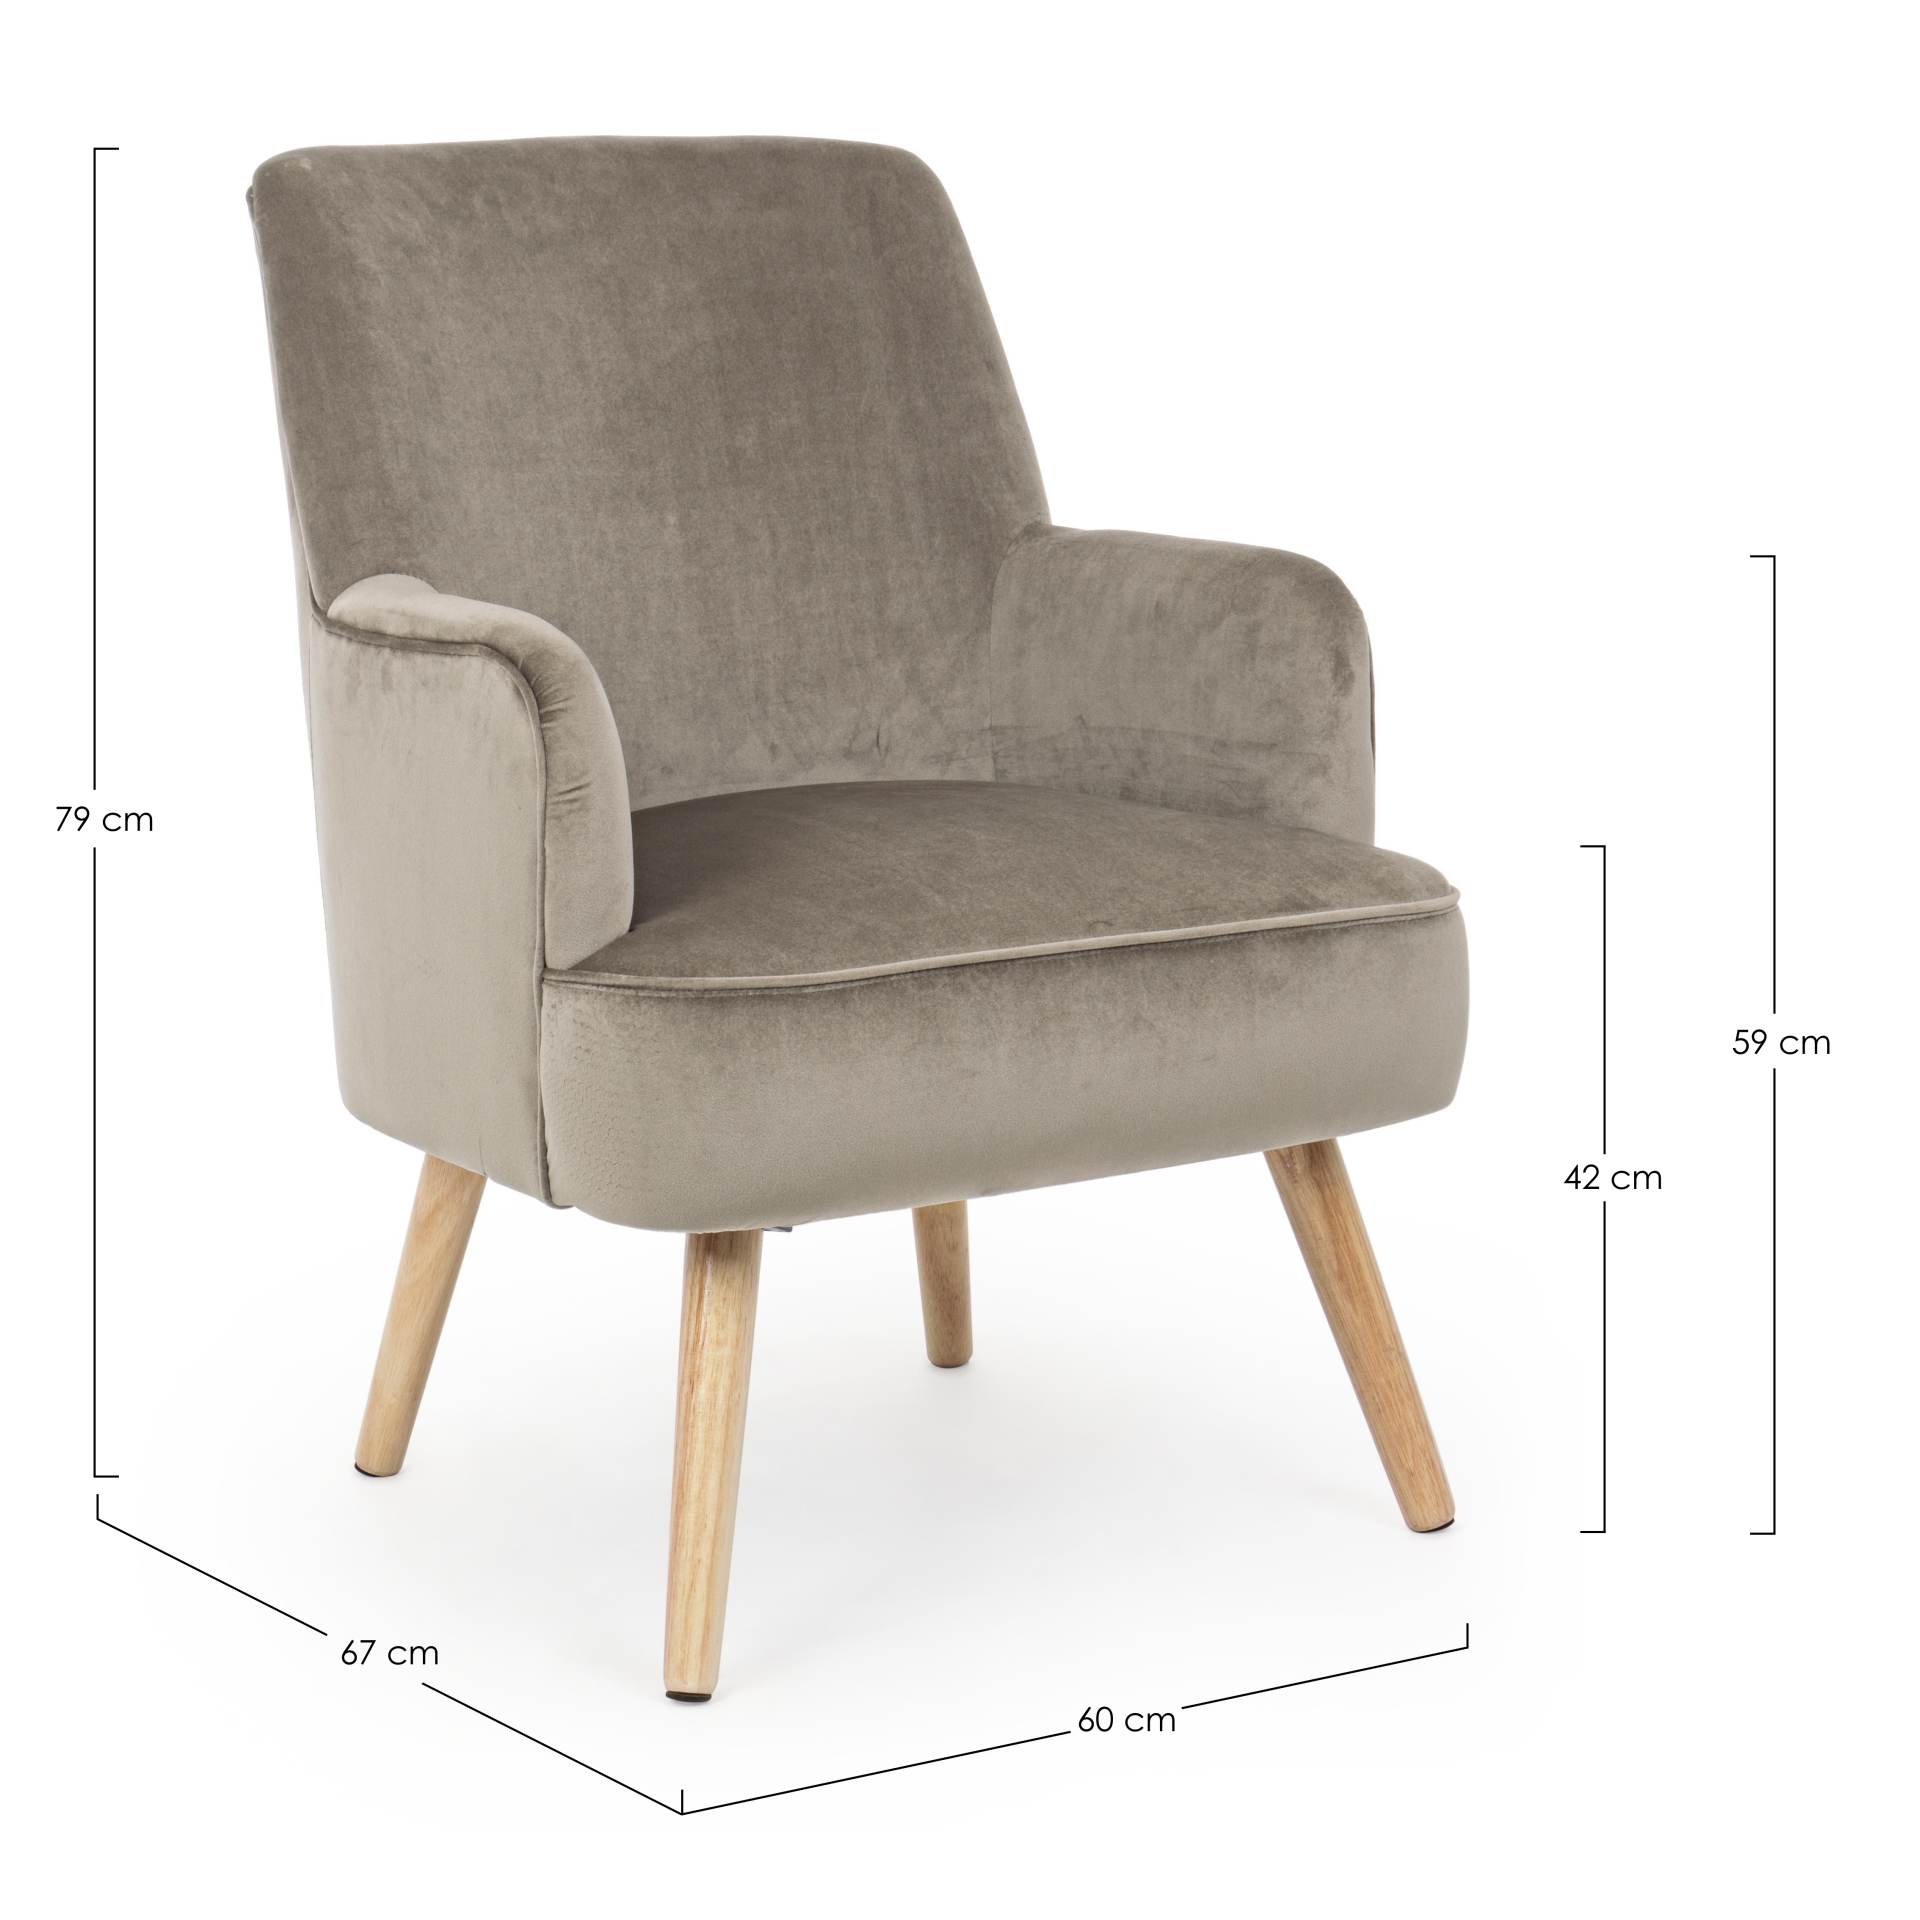 Der Sessel Adeline überzeugt mit seinem klassischen Design. Gefertigt wurde er aus Stoff in Samt-Optik, welcher einen Taupe Farbton besitzt. Das Gestell ist aus Buchenholz und hat eine natürliche Farbe. Der Sessel besitzt eine Sitzhöhe von 42 cm. Die Brei